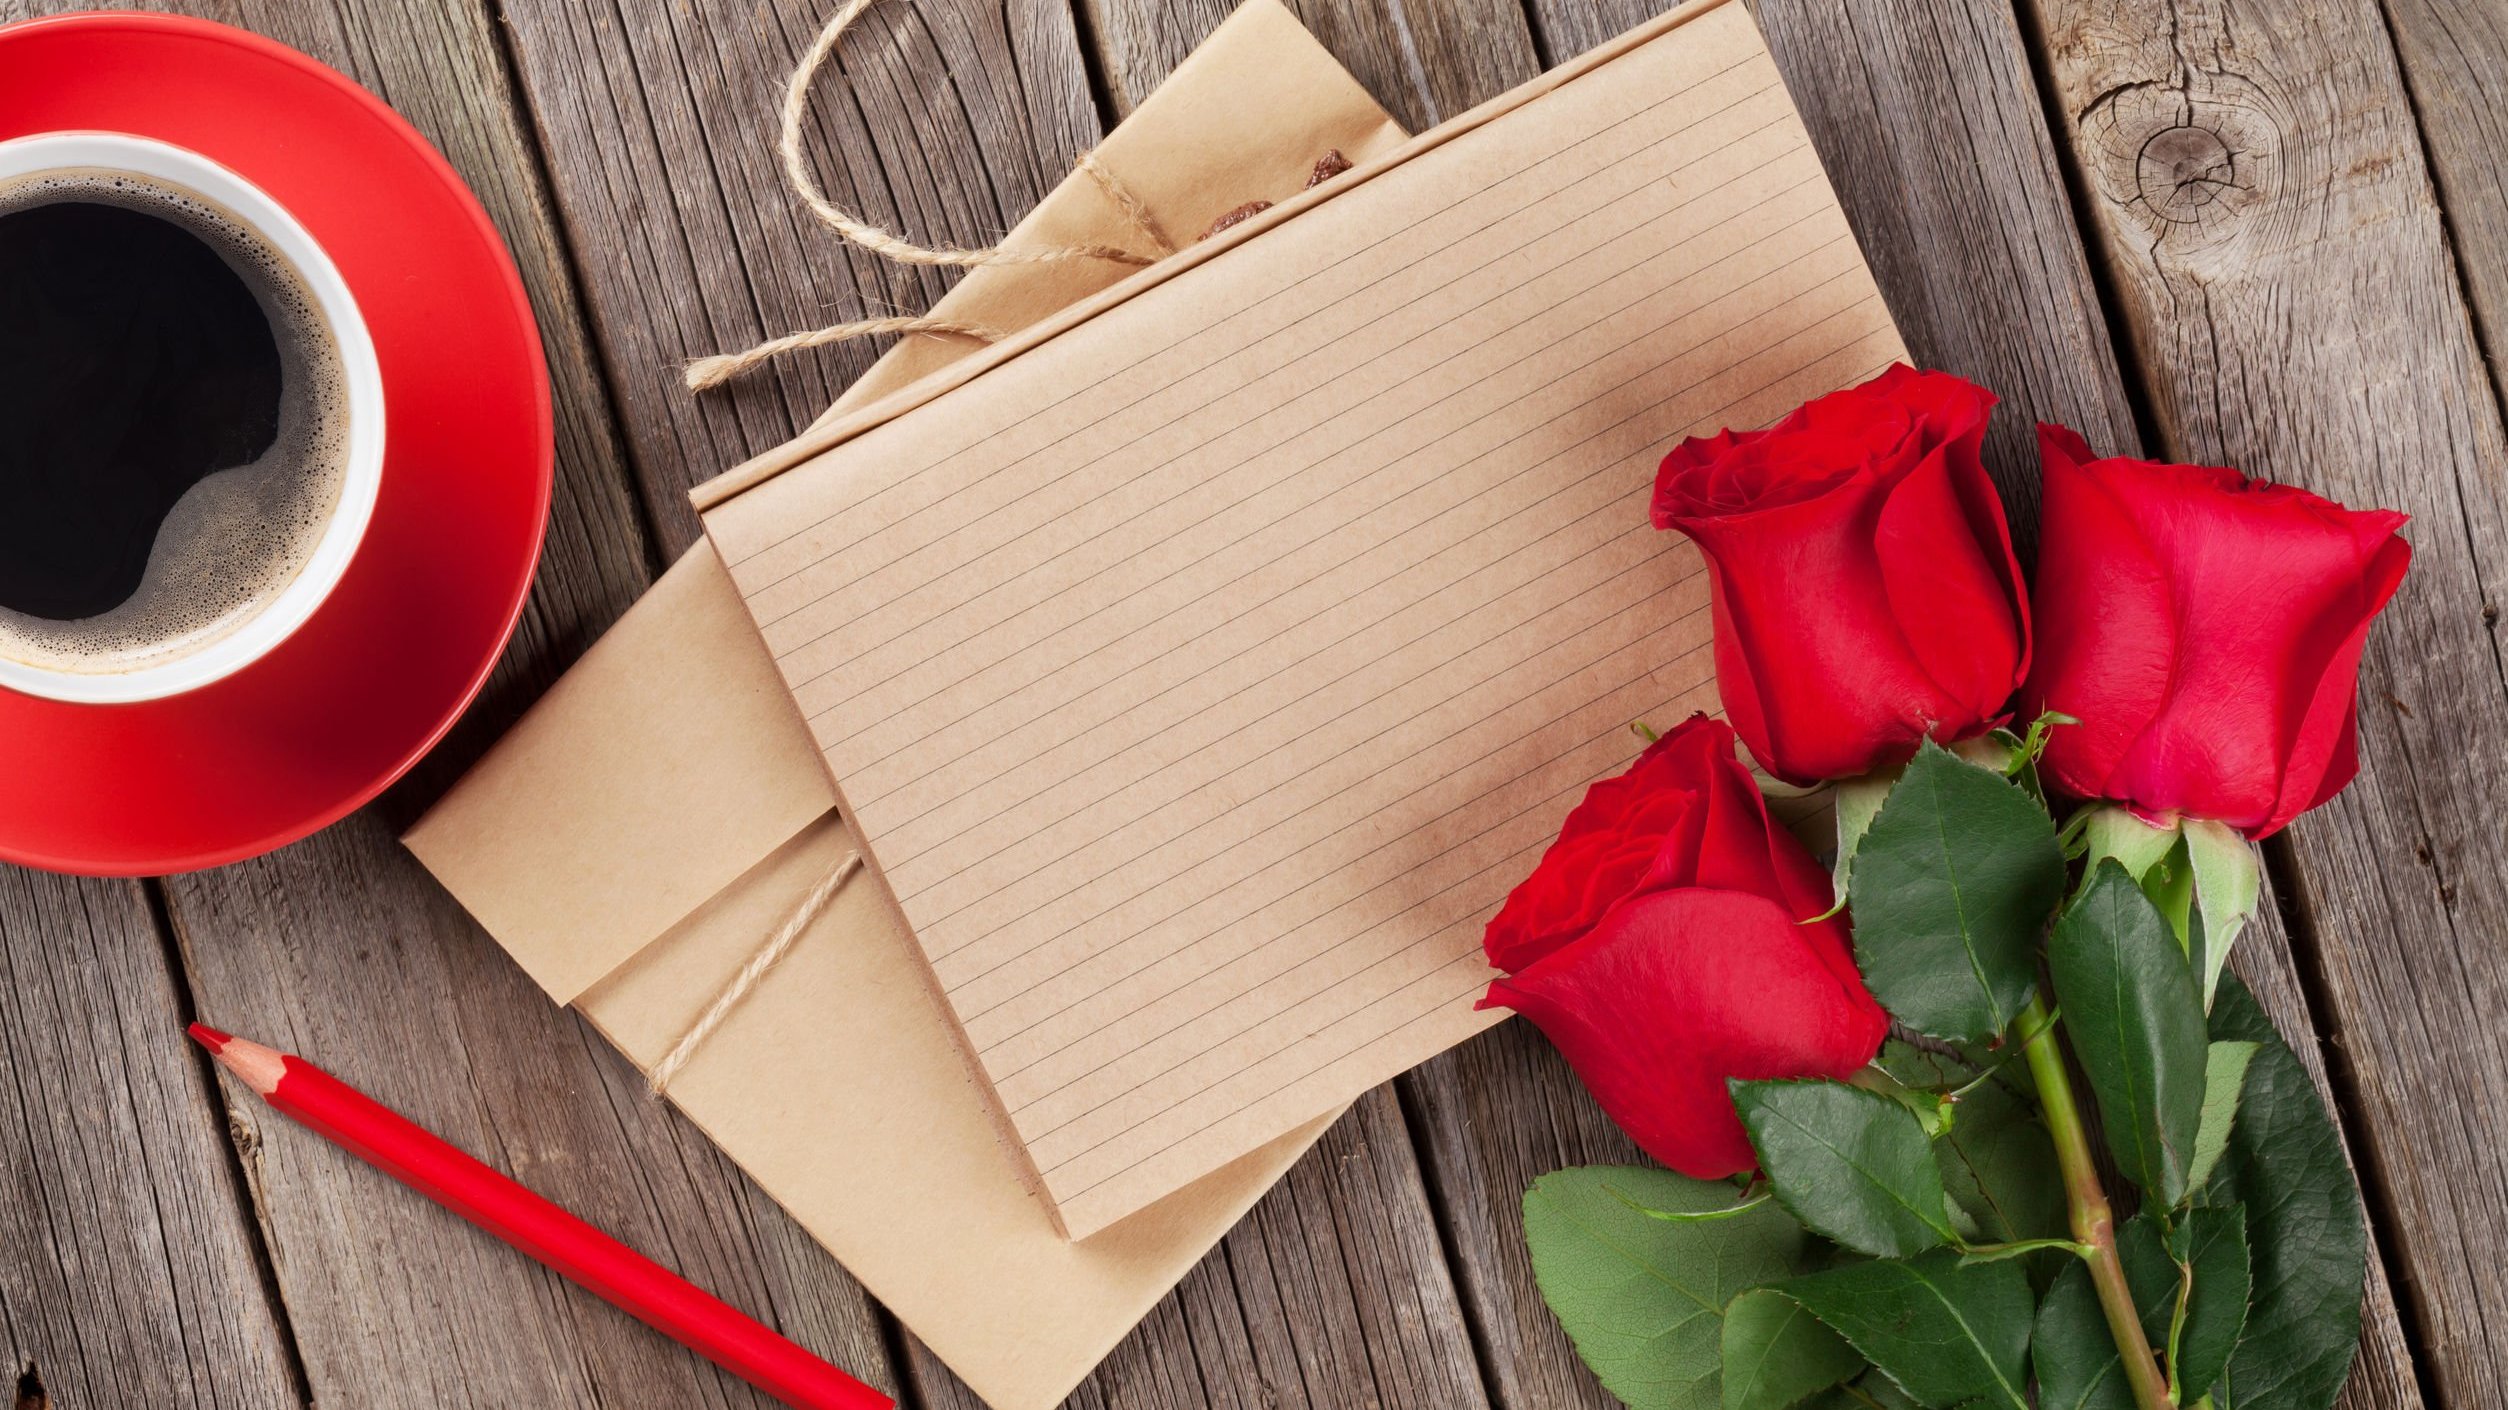 Papeis de carta ao lado de um buquê de rosas e uma xícara de café.